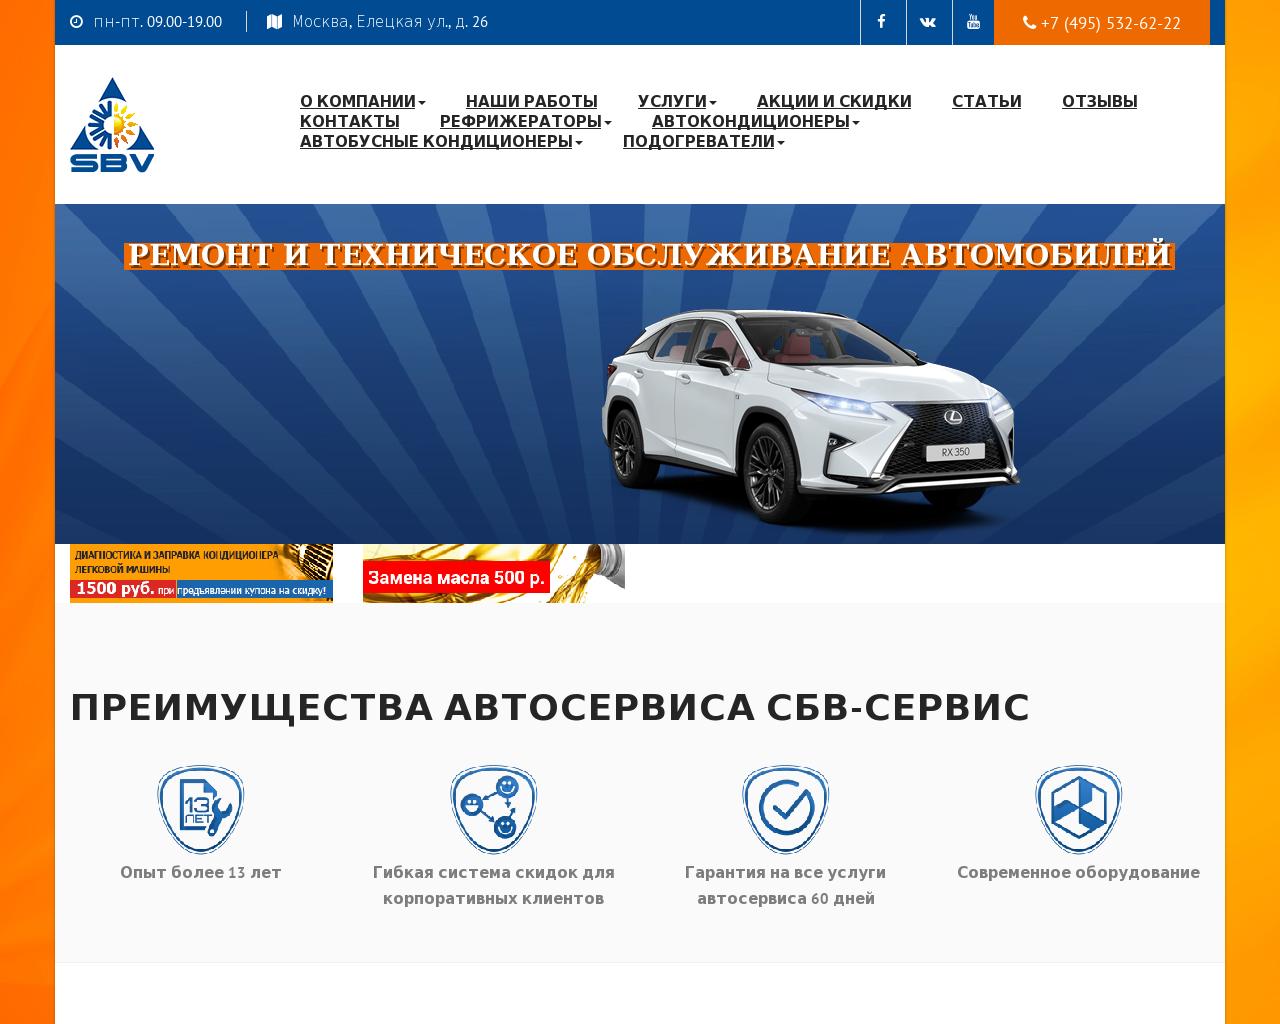 Изображение сайта sbv-service.ru в разрешении 1280x1024